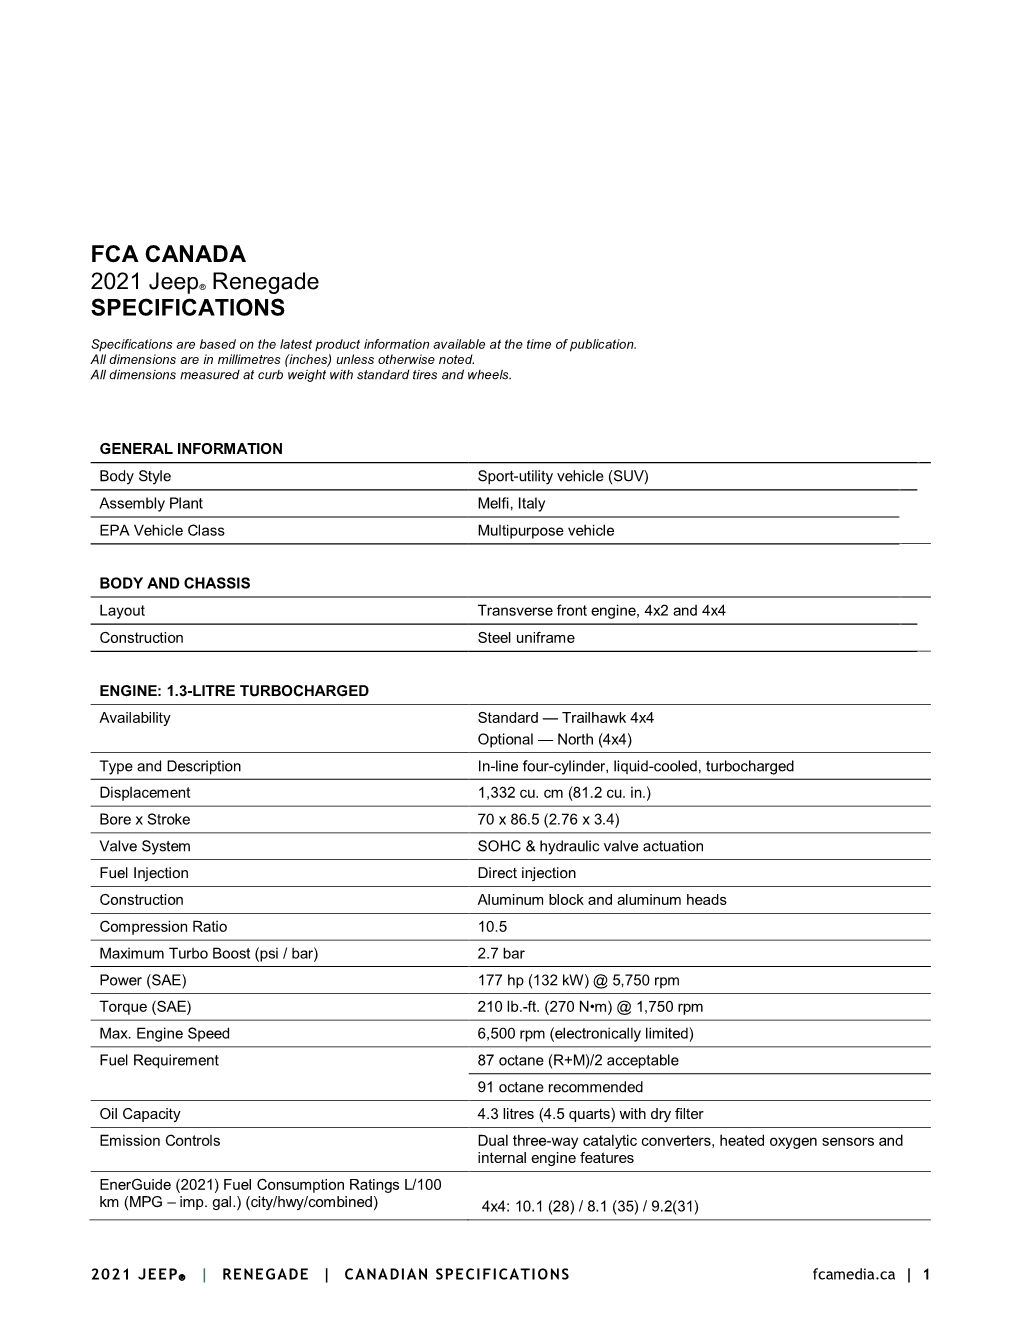 FCA CANADA 2021 Jeep® Renegade SPECIFICATIONS